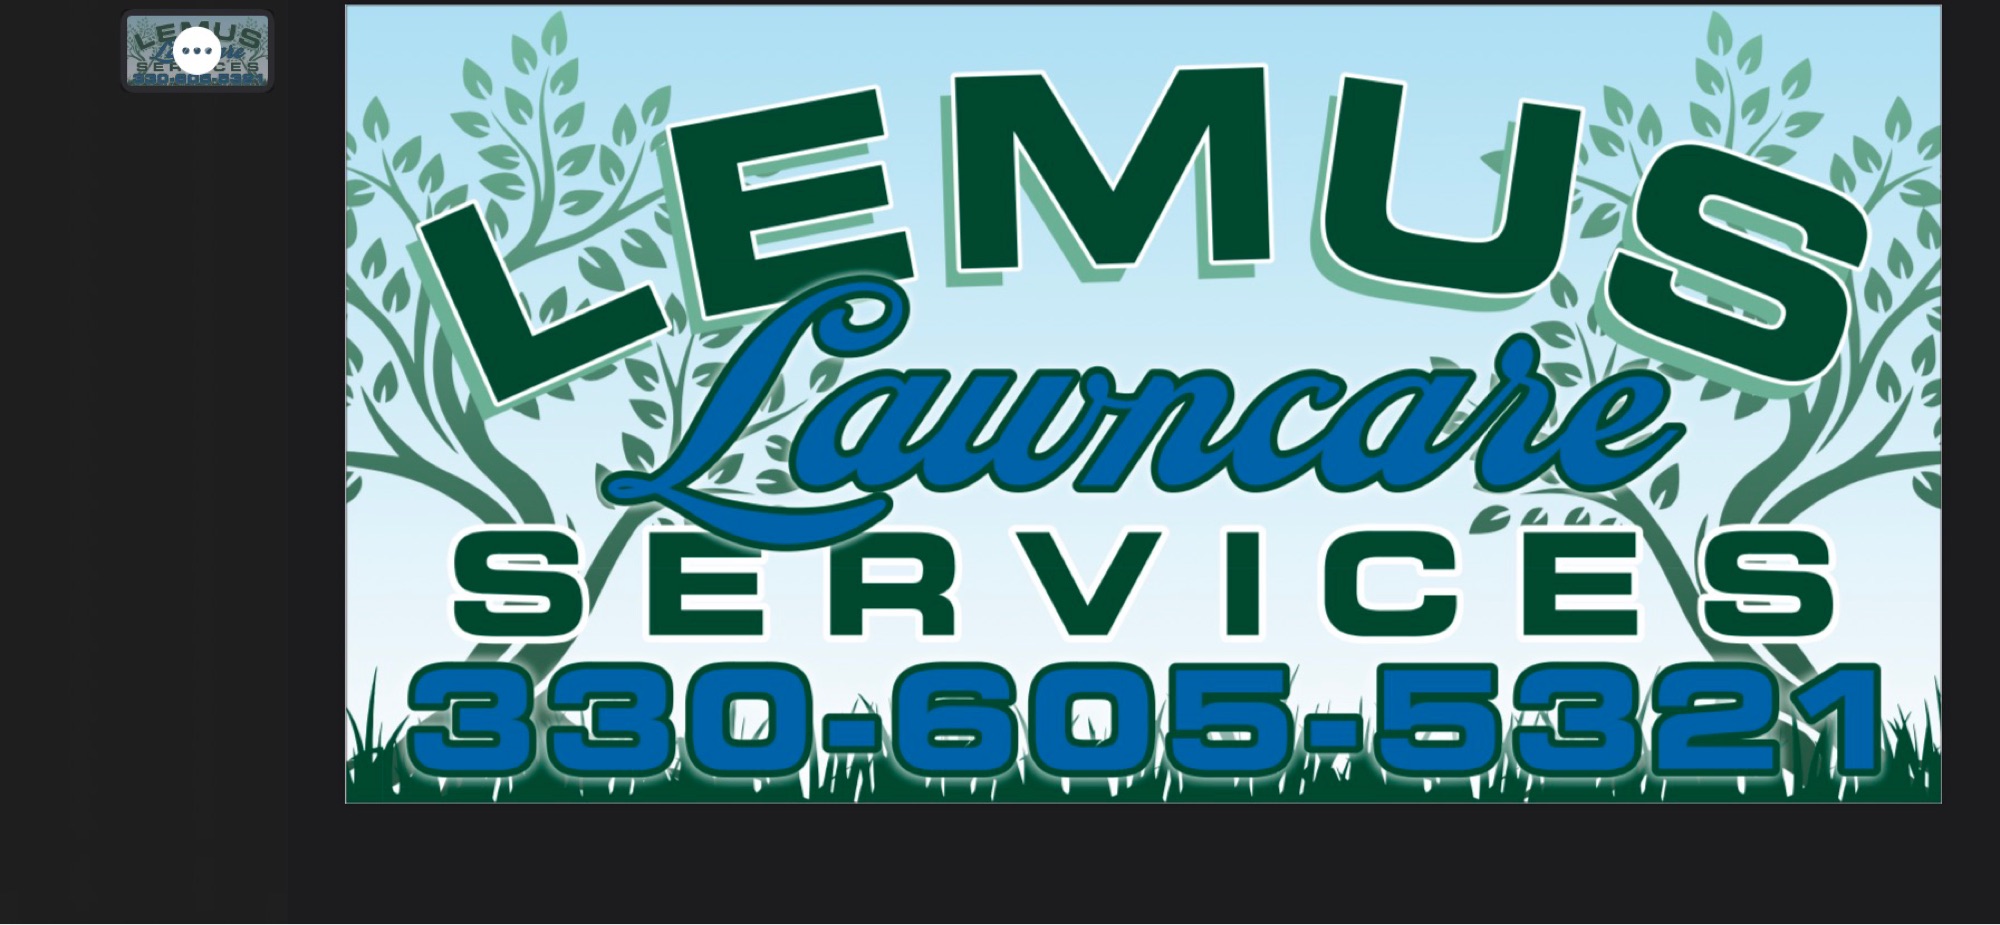 Lemus Lawncare Services LLC Logo